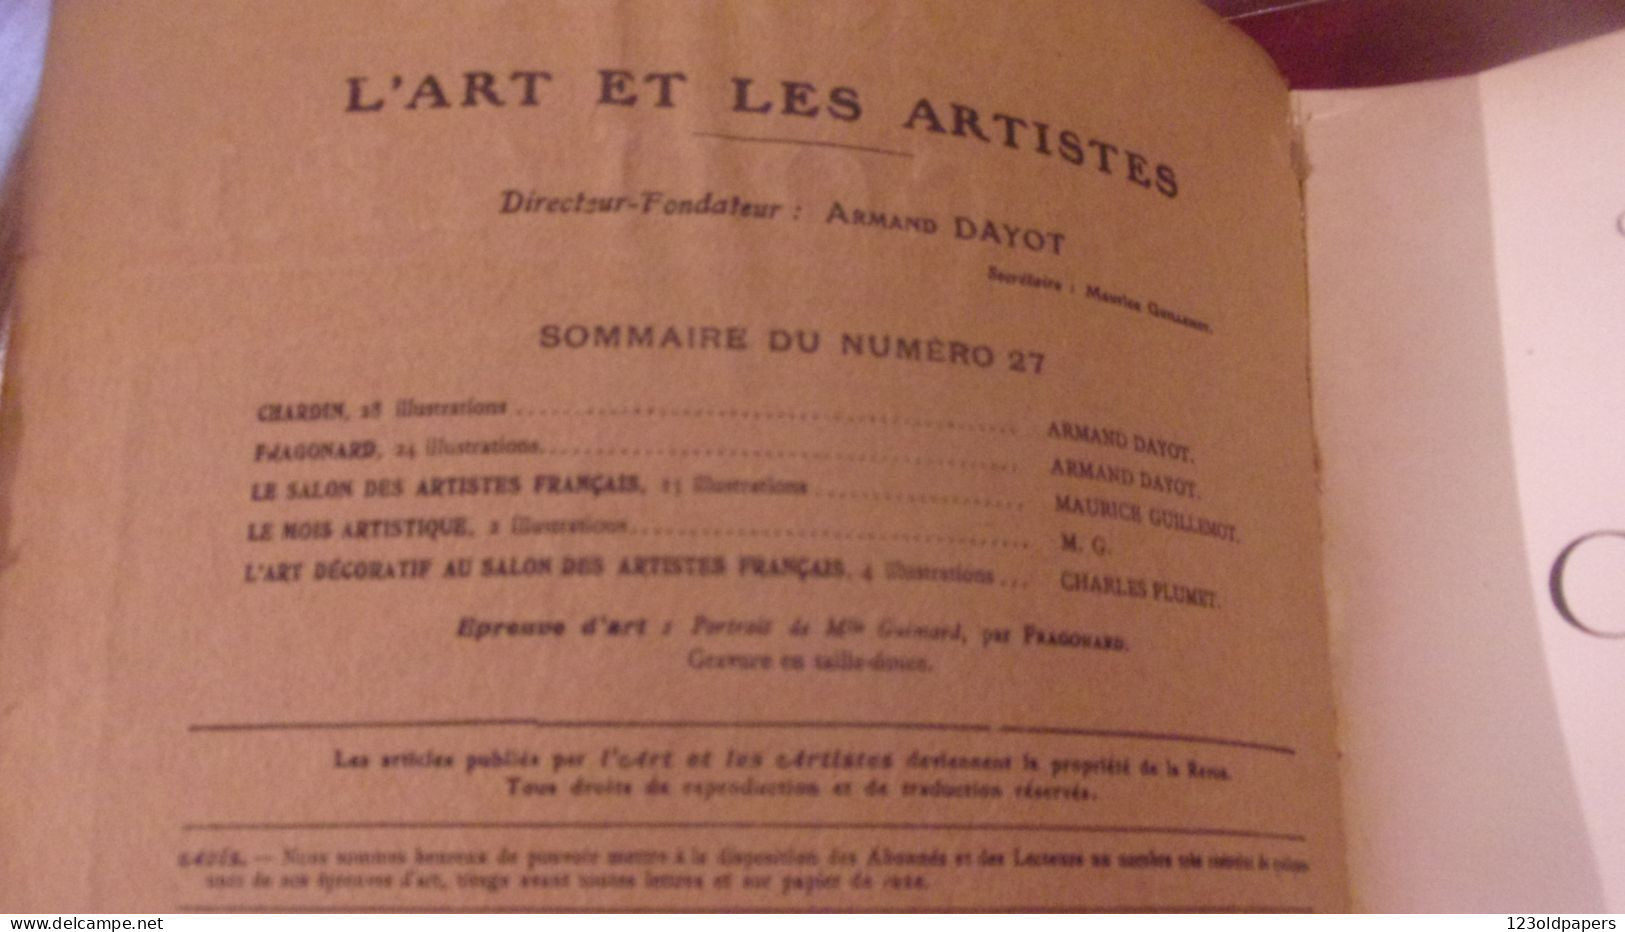 Chardin & Fragonard Numéro Spécial De L'art & Les Artistes N°27 3e Année Juin 1907 - Kunst